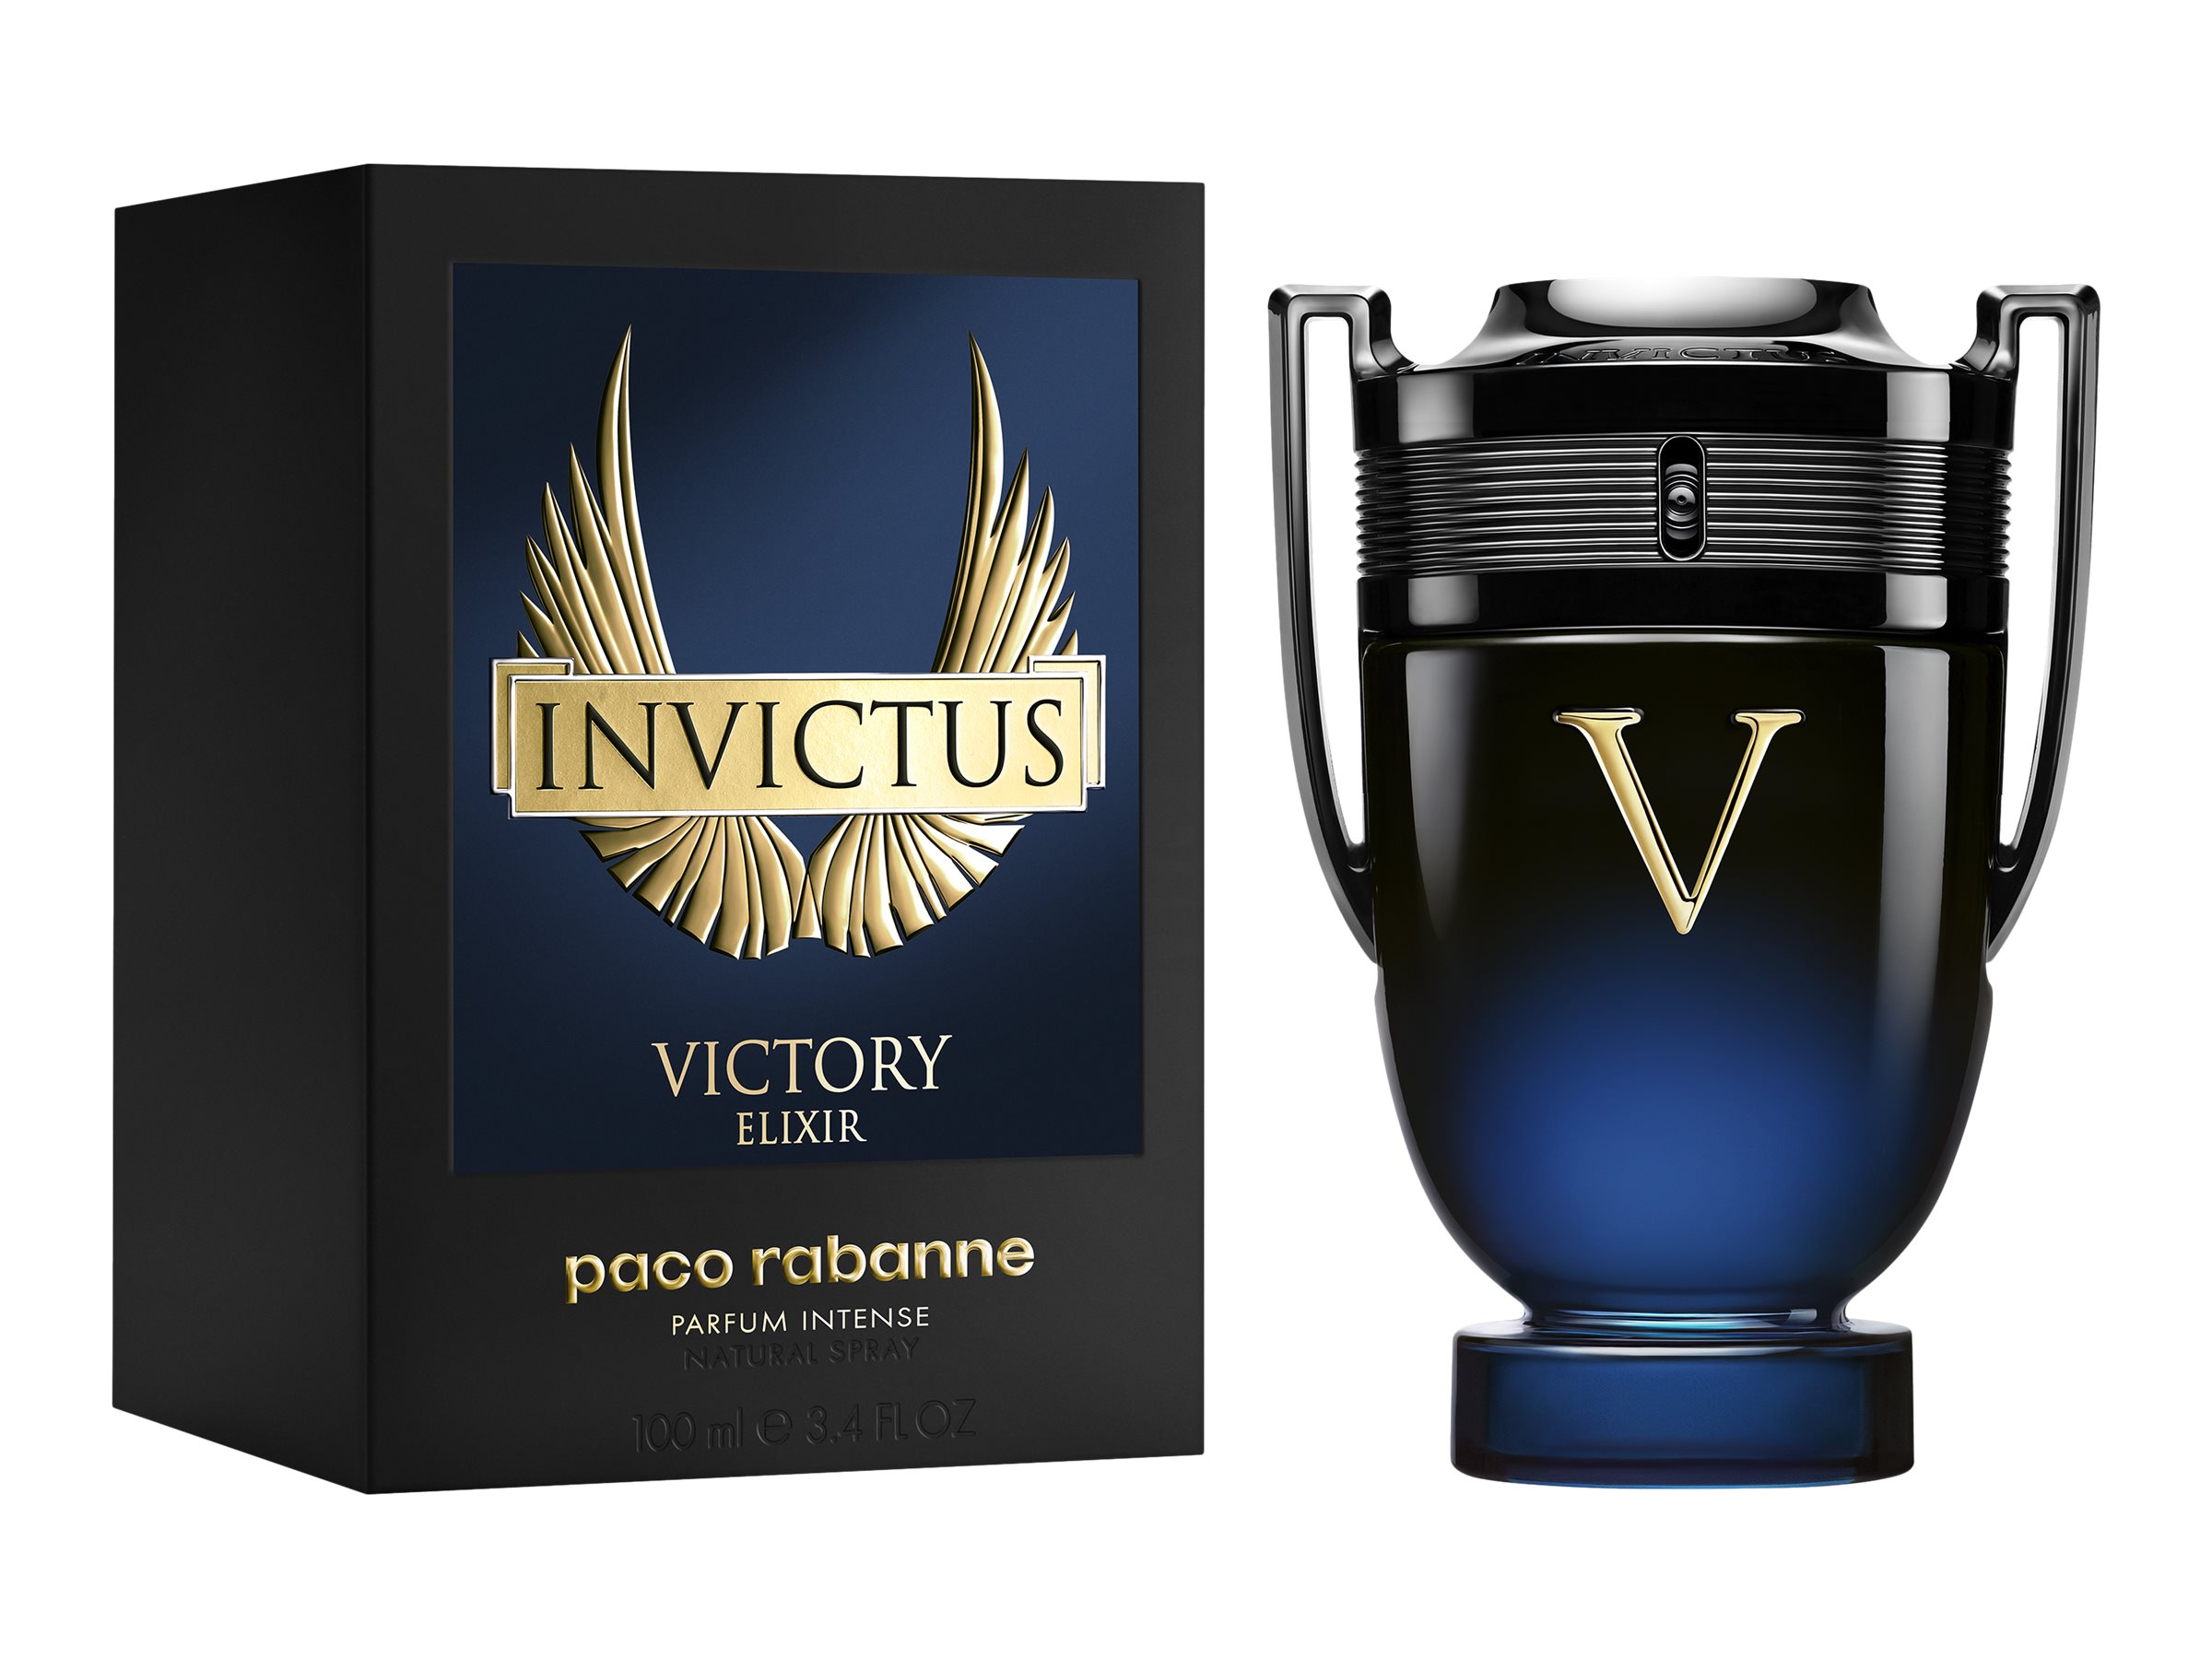 Paco Rabanne Invictus Victory Elixir Eau De Parfum Intense 100ml ...